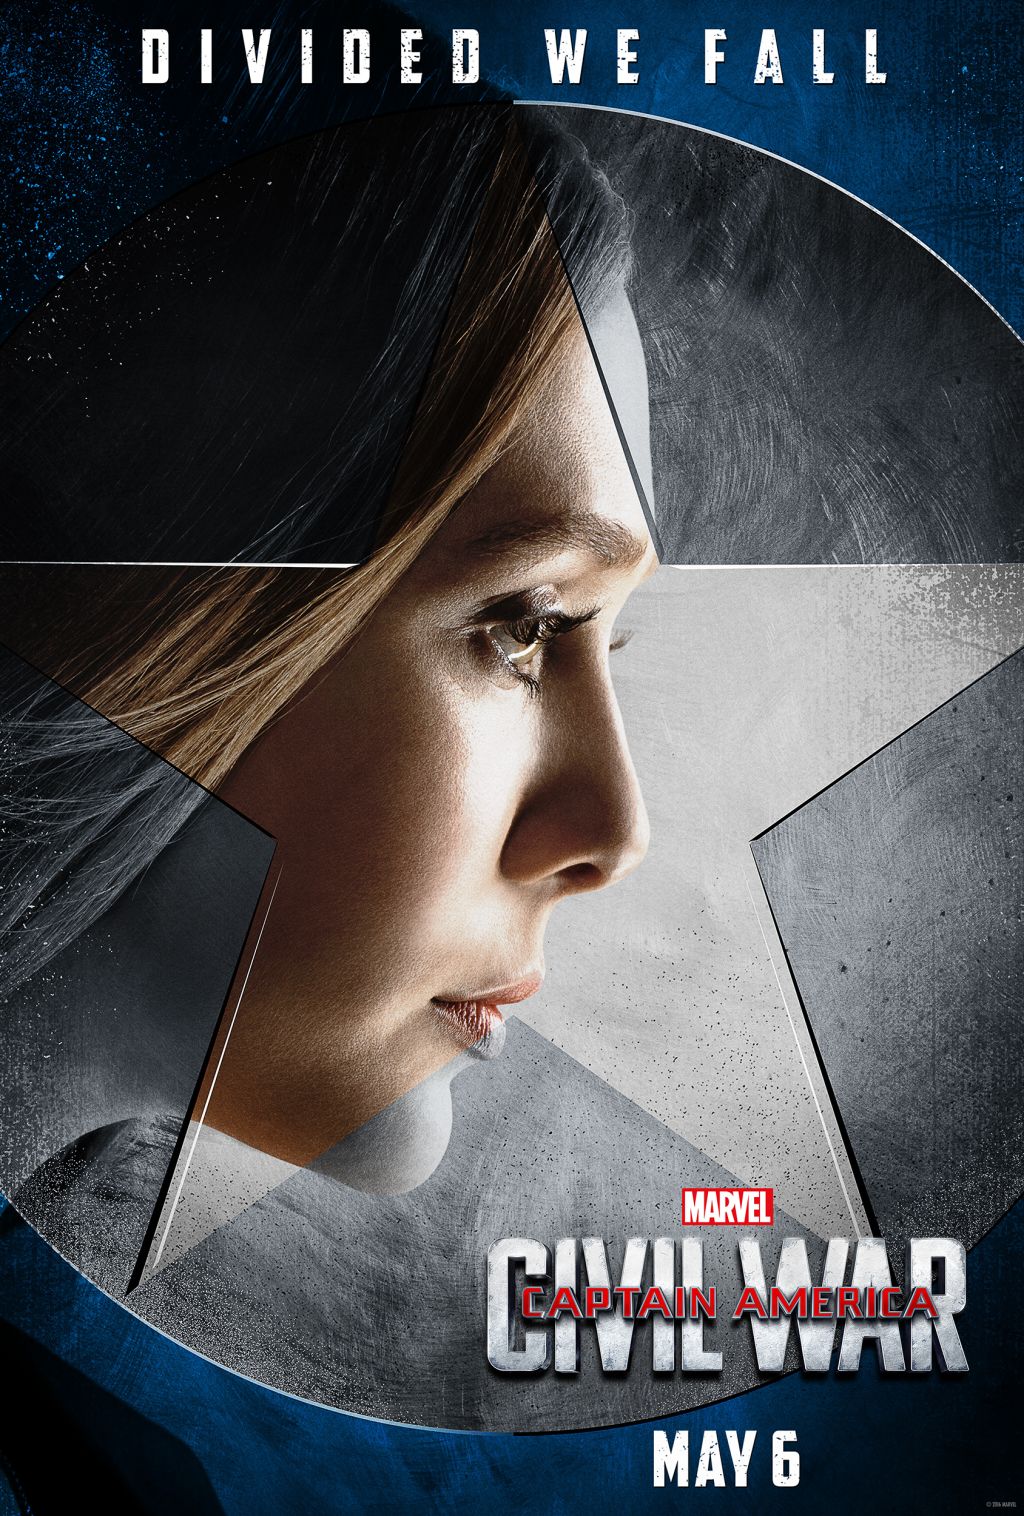 Captain America: Civil War posters